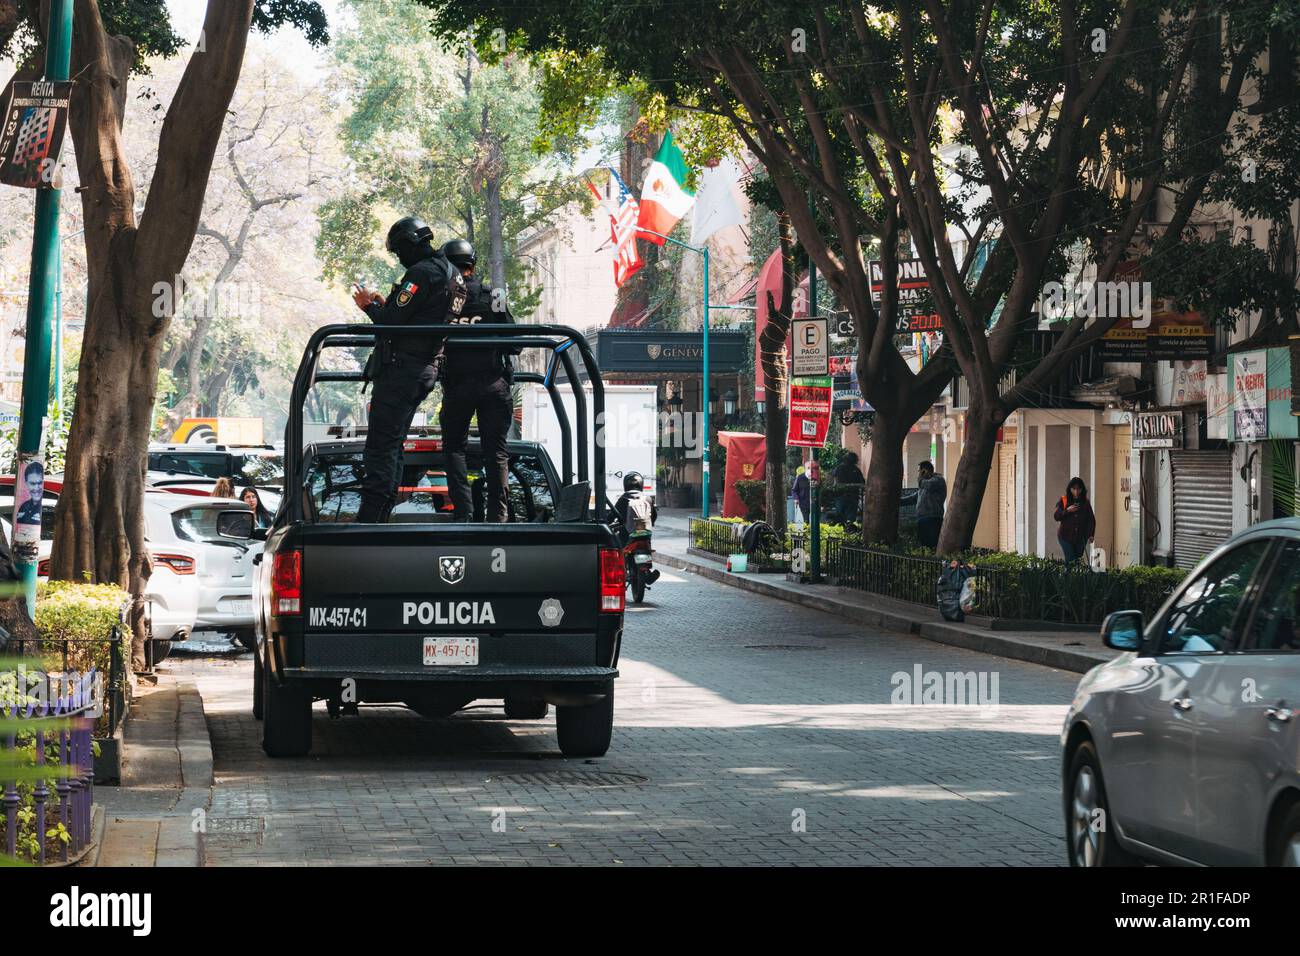 Segreteria della sicurezza del cittadino (SSC) polizia di pubblica sicurezza in piedi sul retro di un pick-up a Juárez, Città del Messico Foto Stock